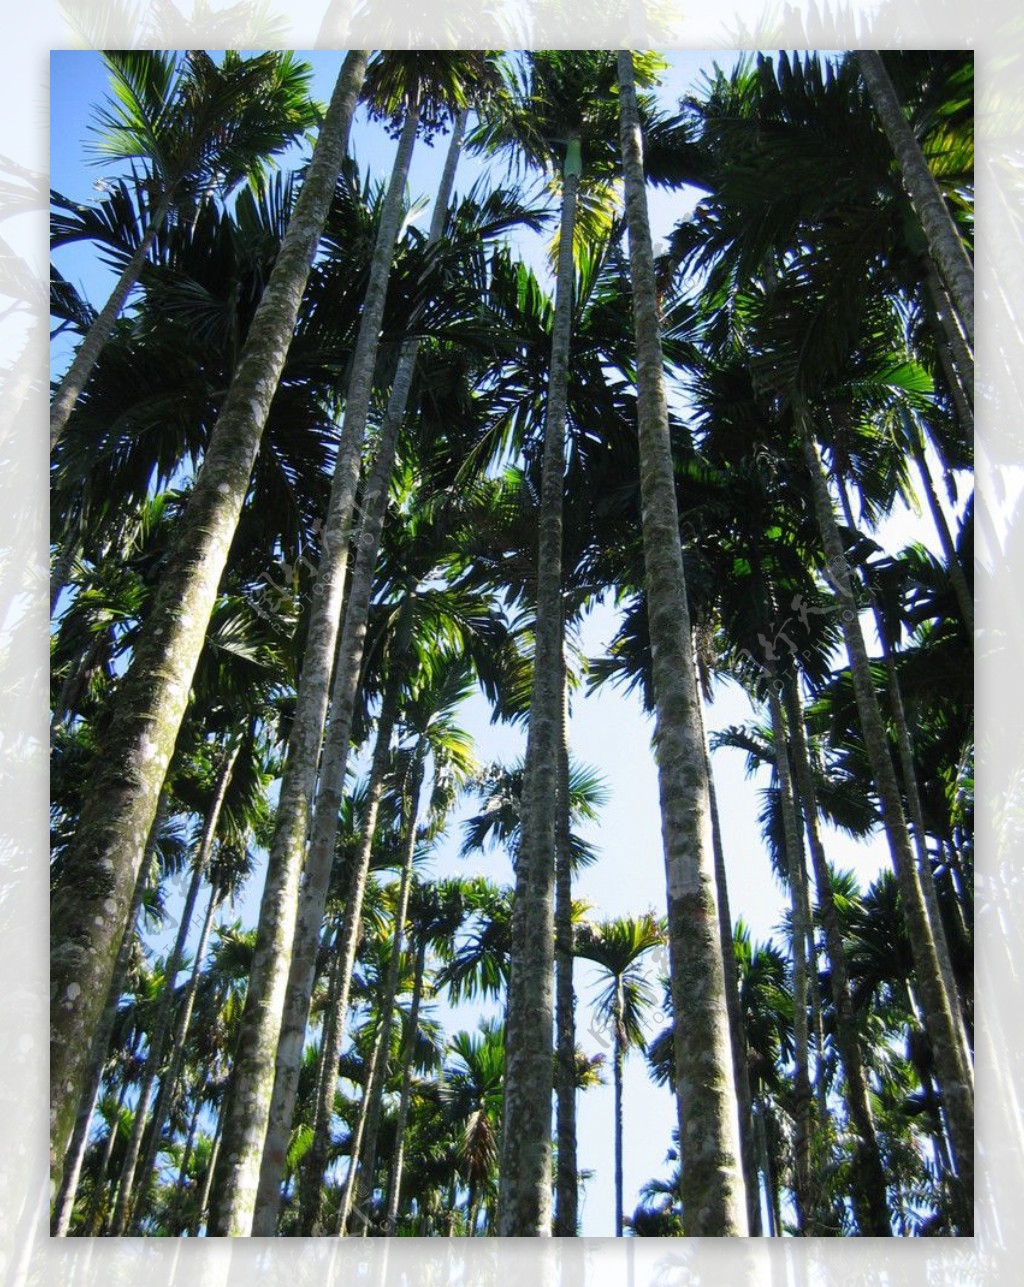 槟榔谷的槟榔树图片